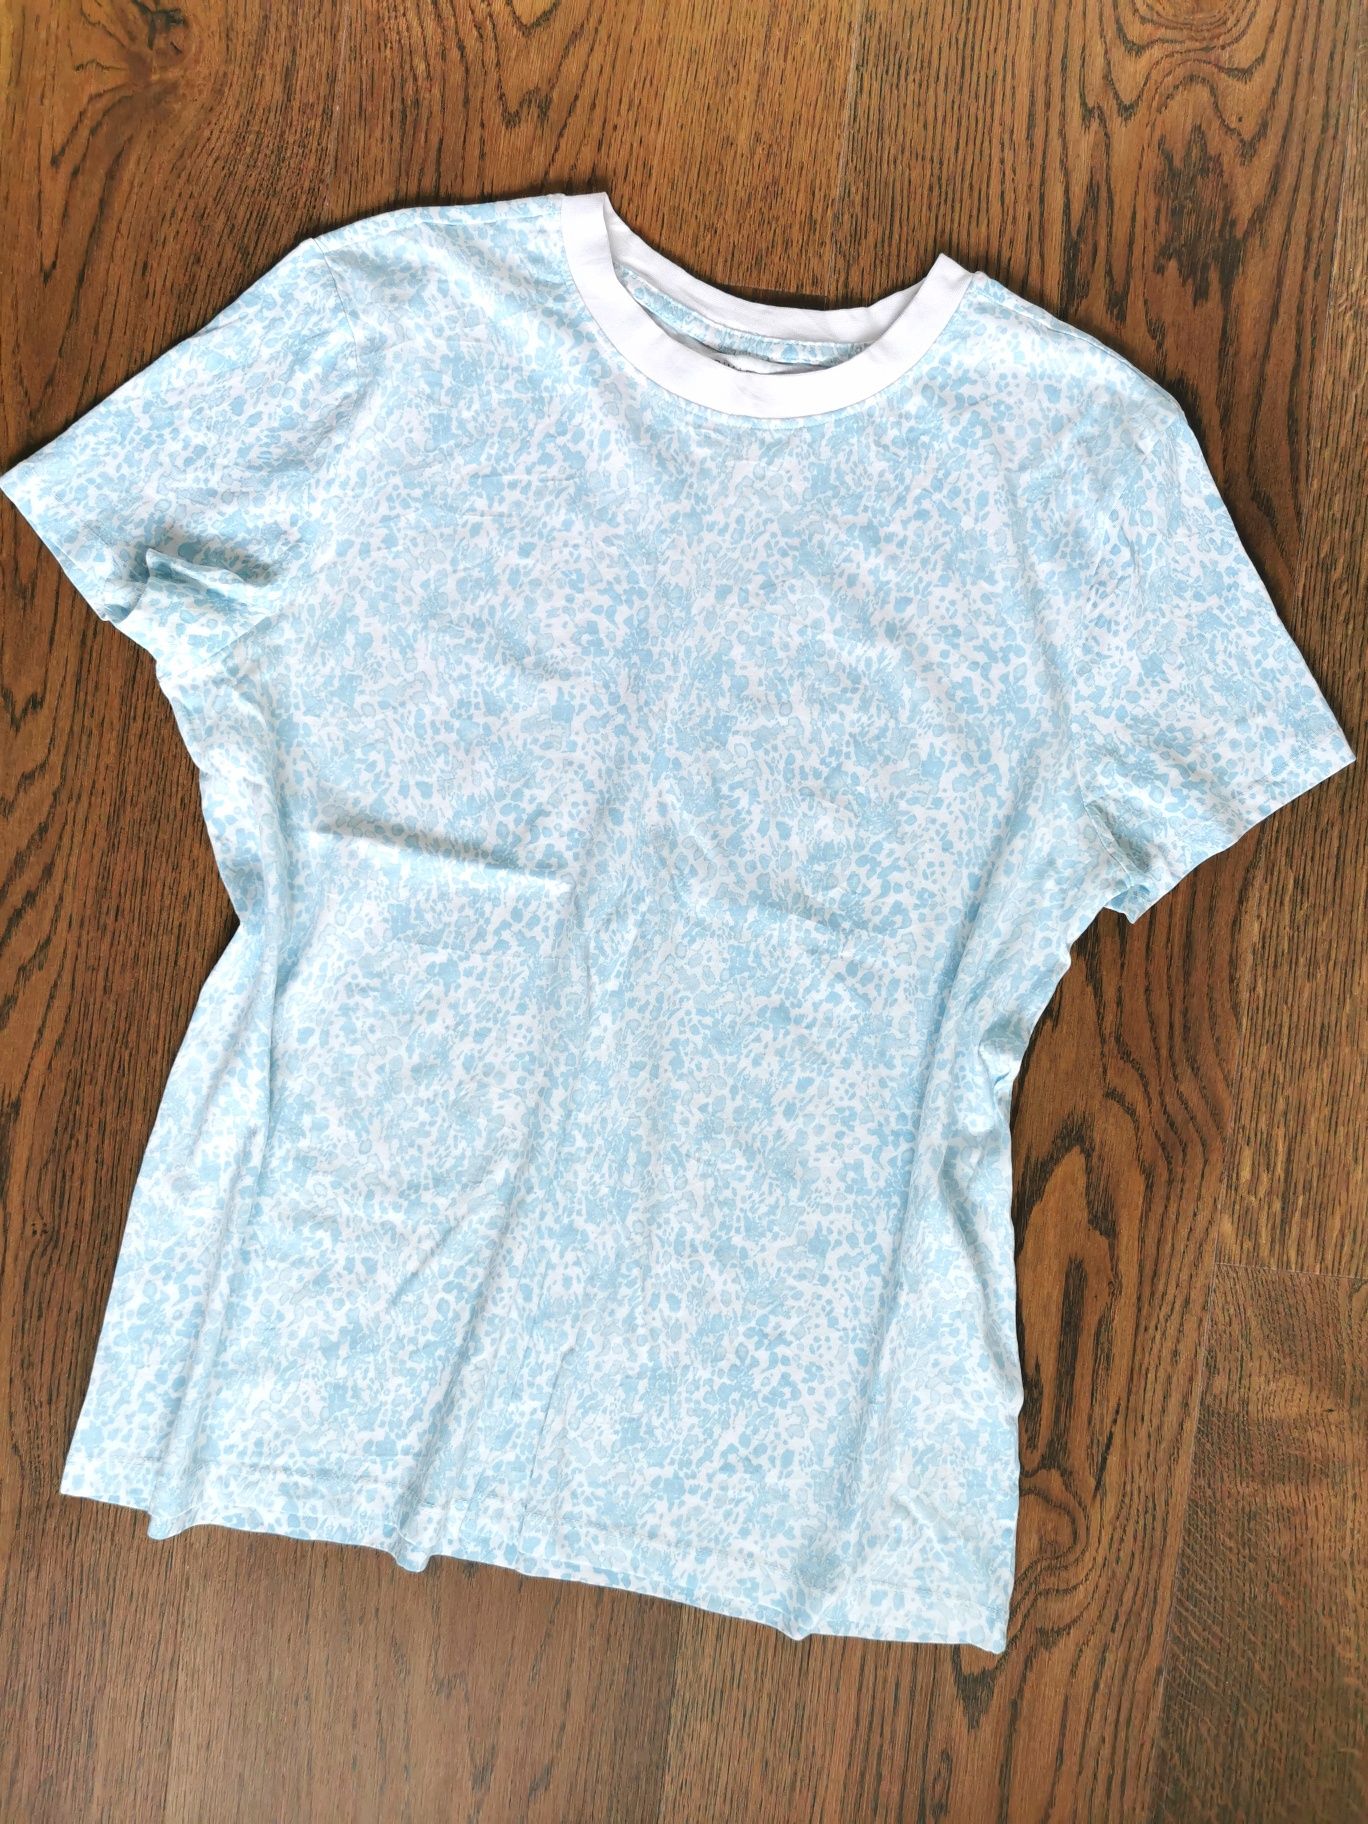 Primart t-shirt biało niebieski, rozmiar 40-42